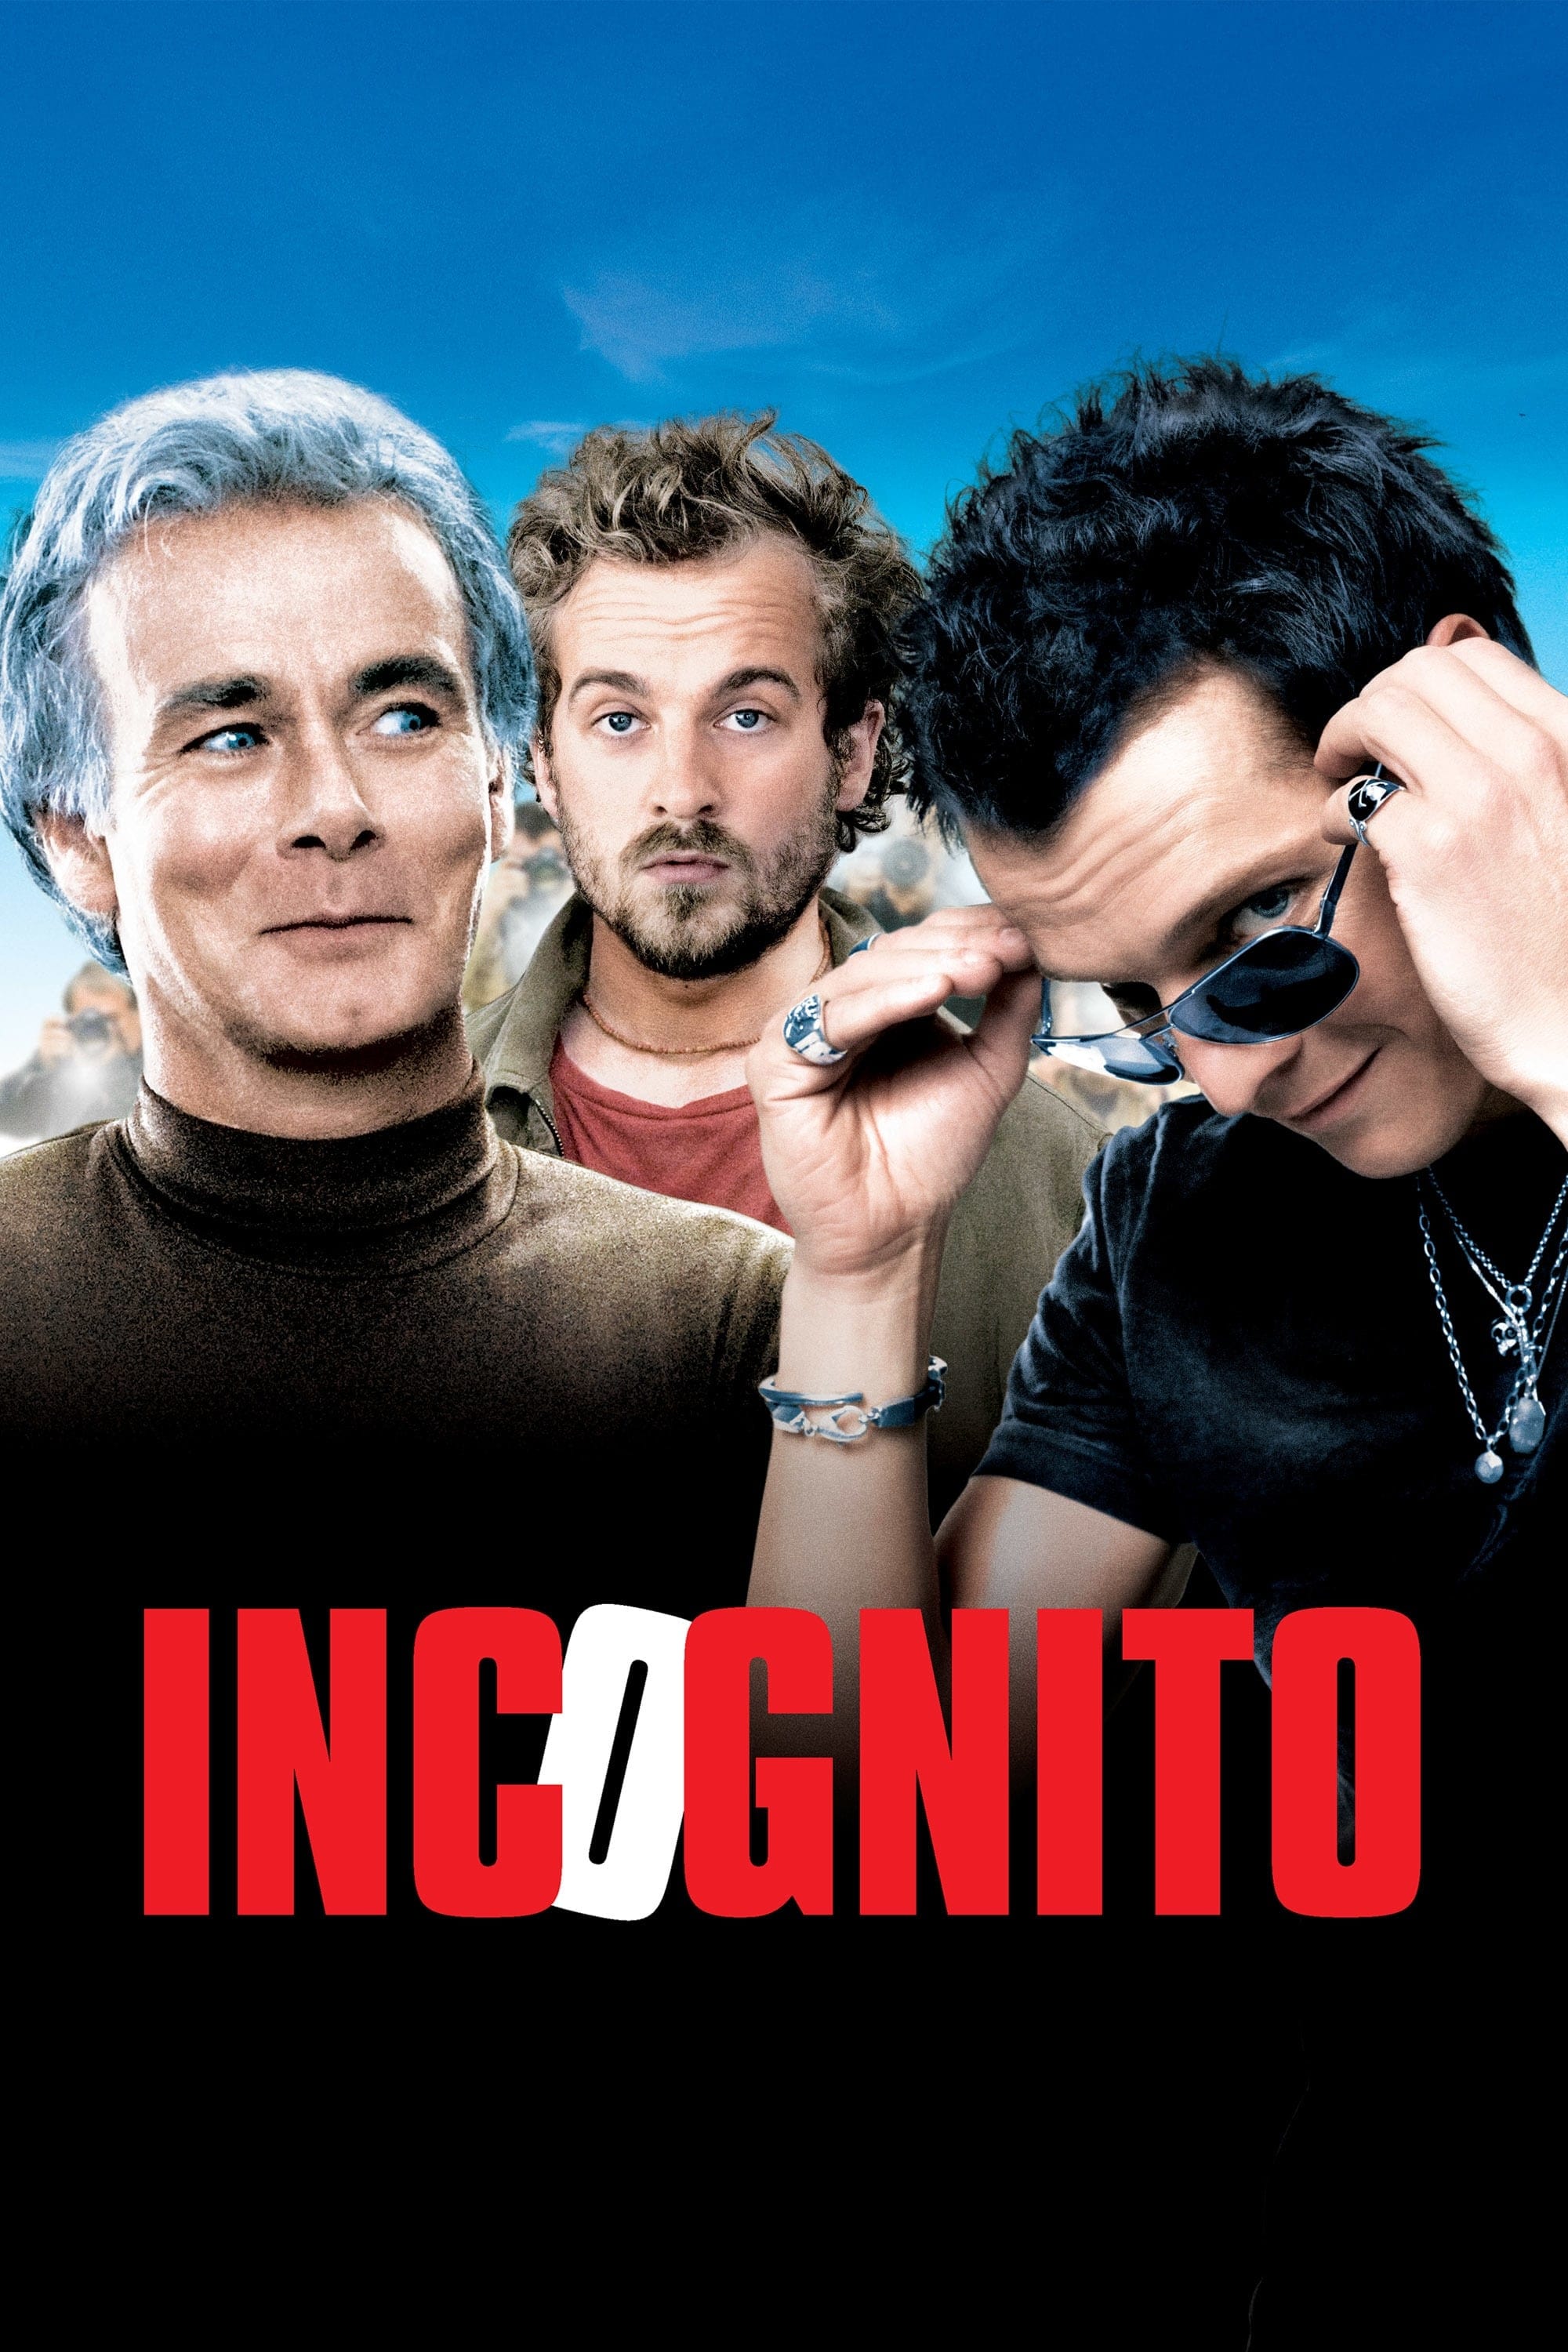 Incognito (2009)